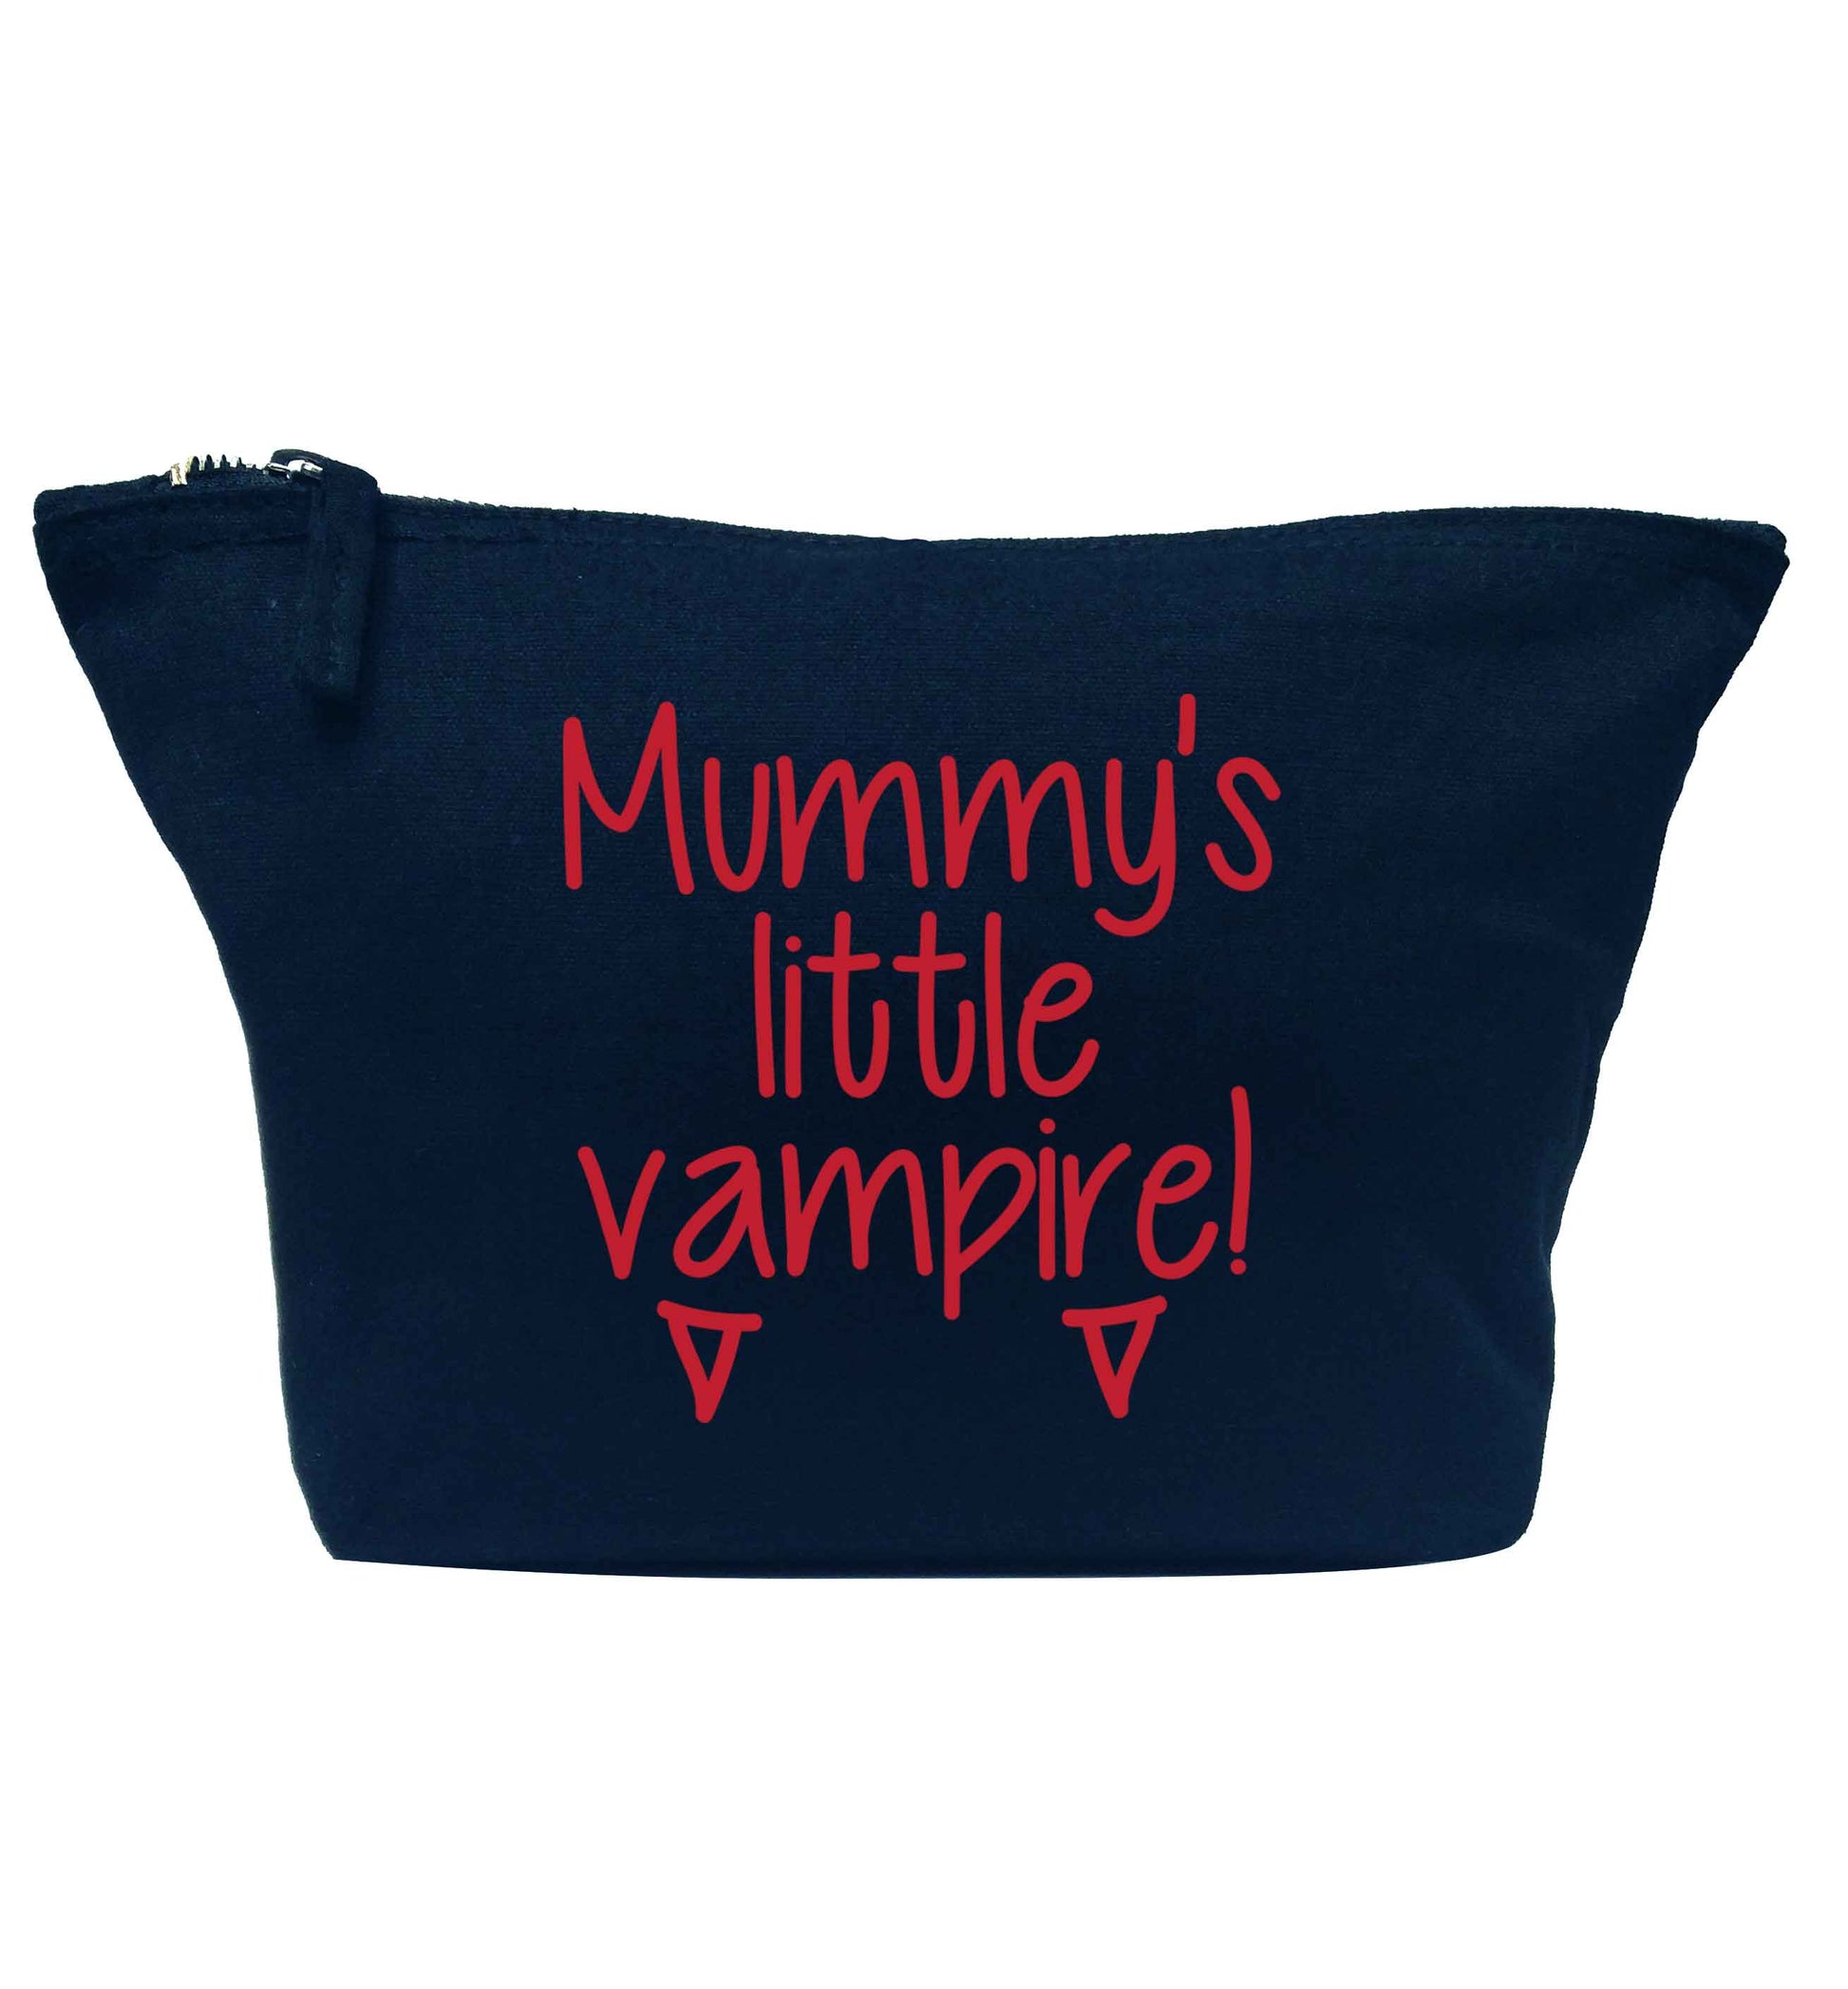 Mummy's little vampire navy makeup bag